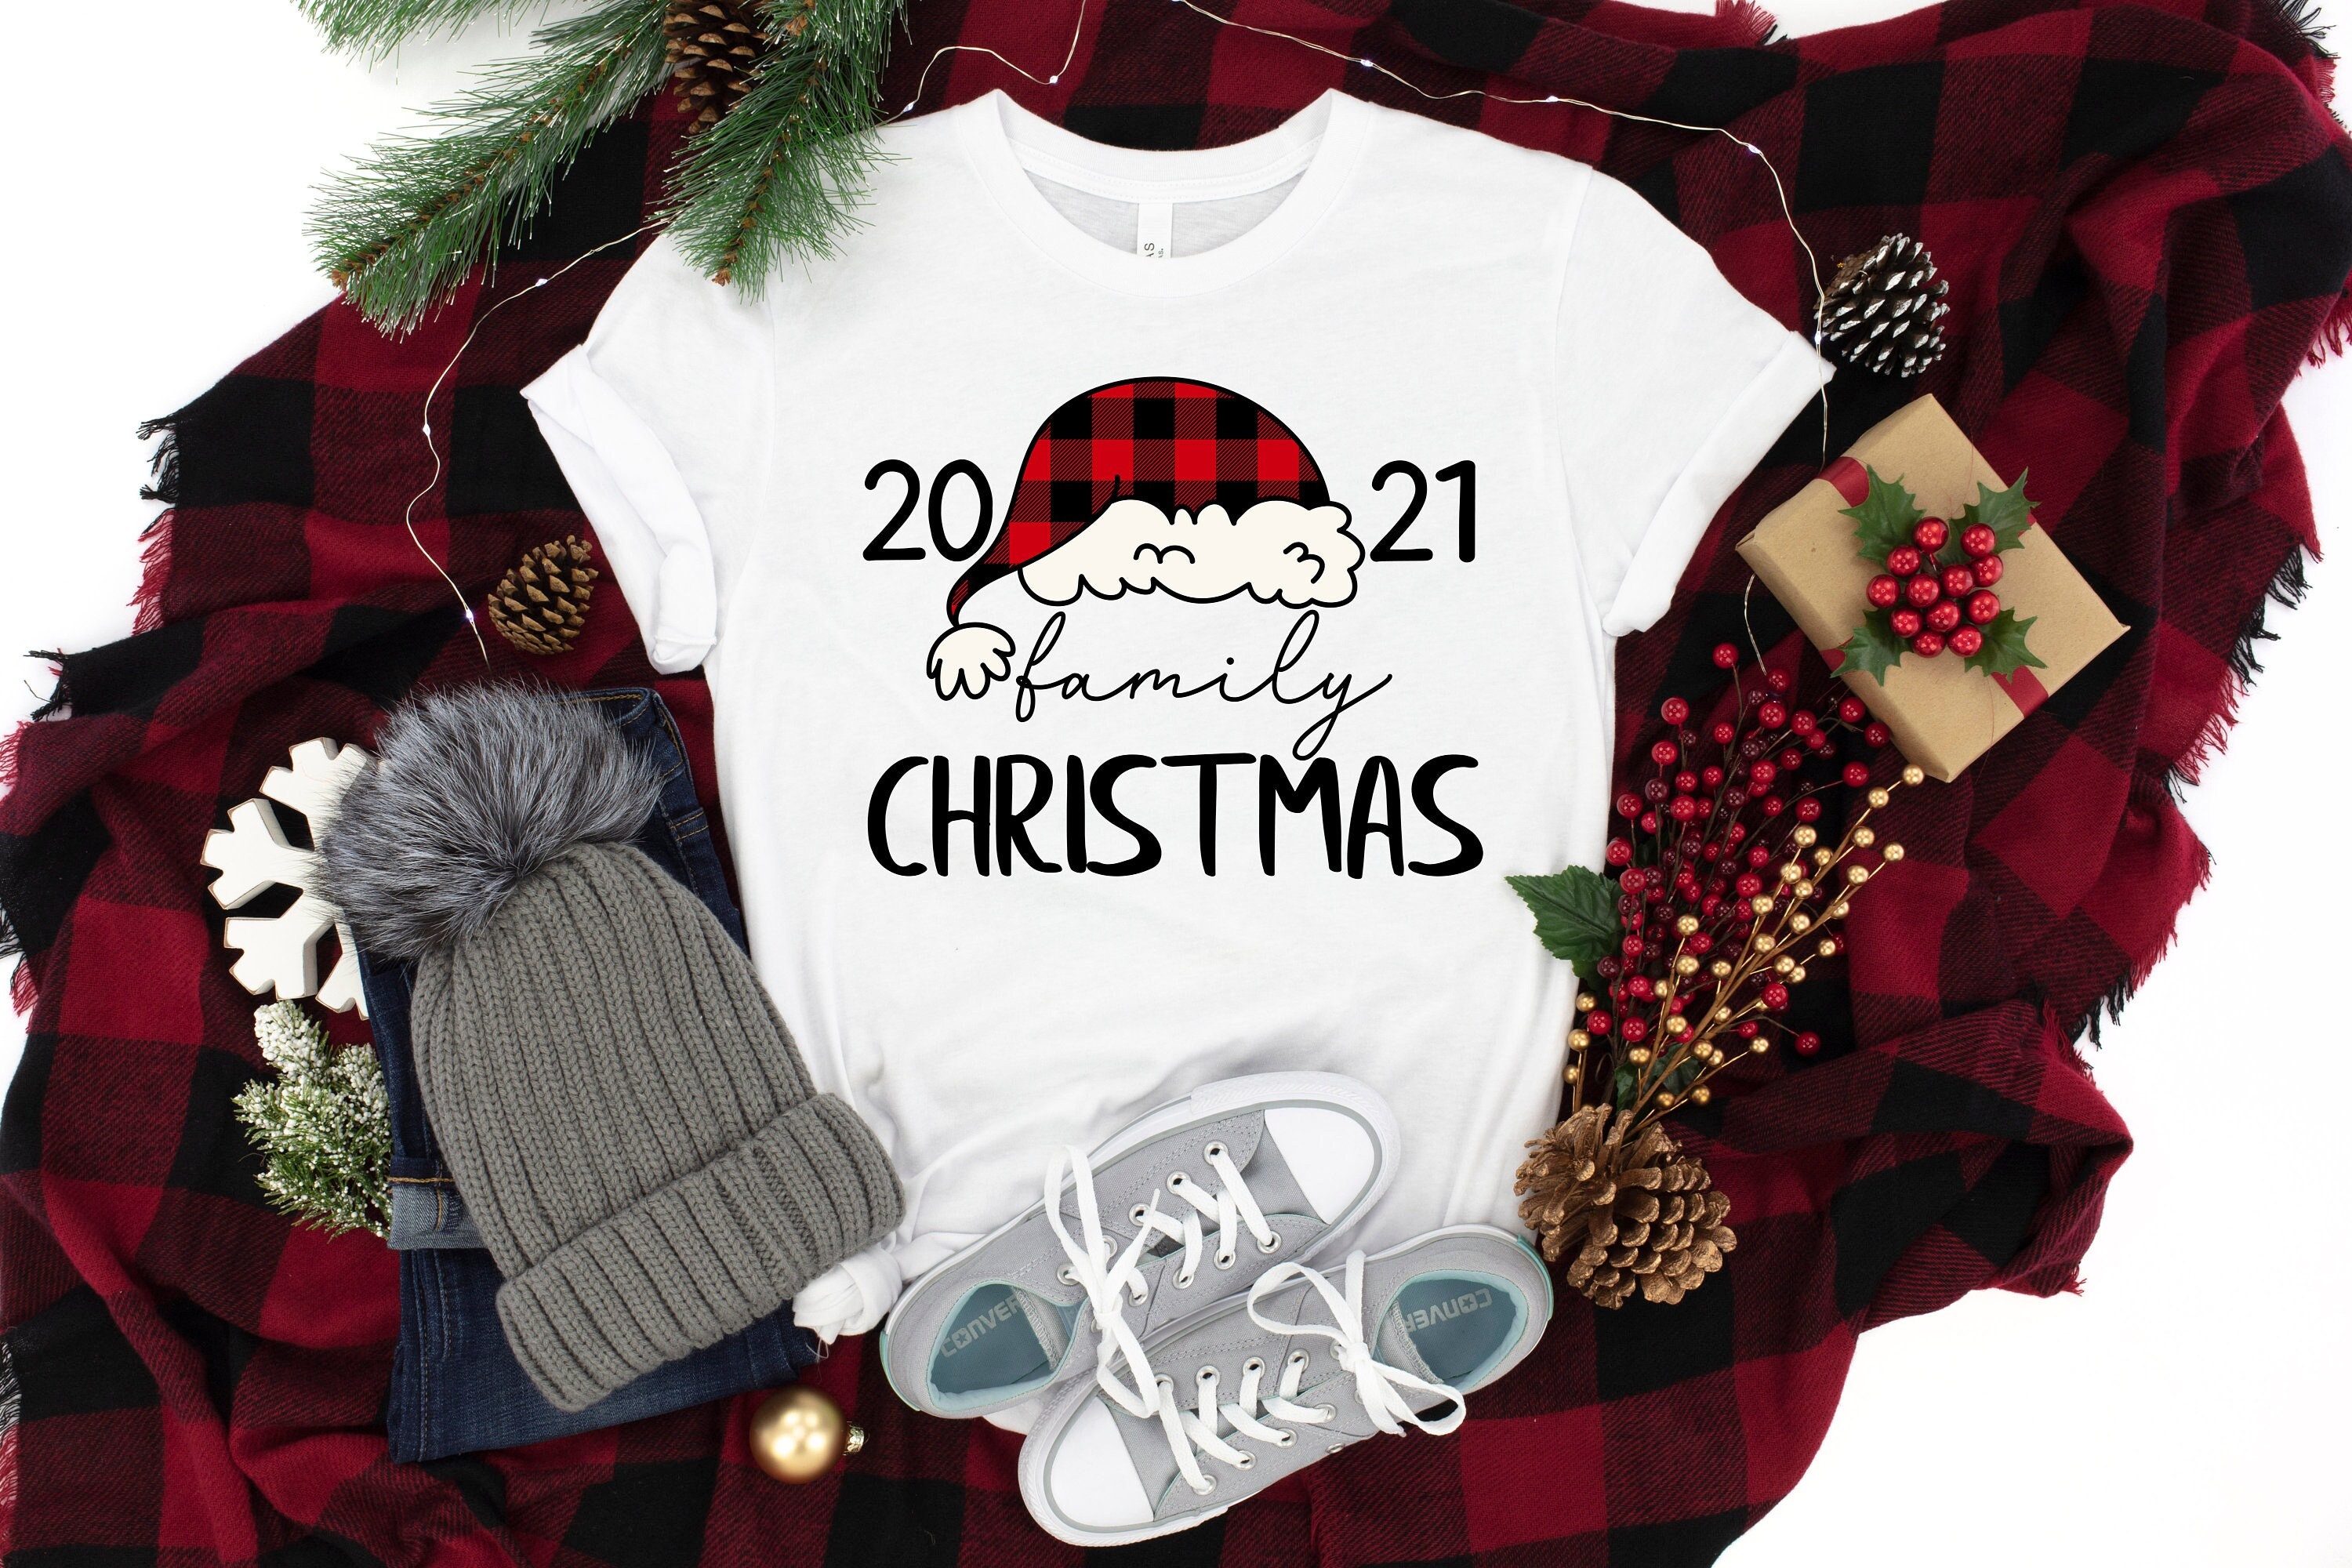 2021 Family Christmas Shirt, Family Christmas Shirt, Family Matching Shirt, Christmas Shirt, Merry Christmas Shirt, Christmas Gift